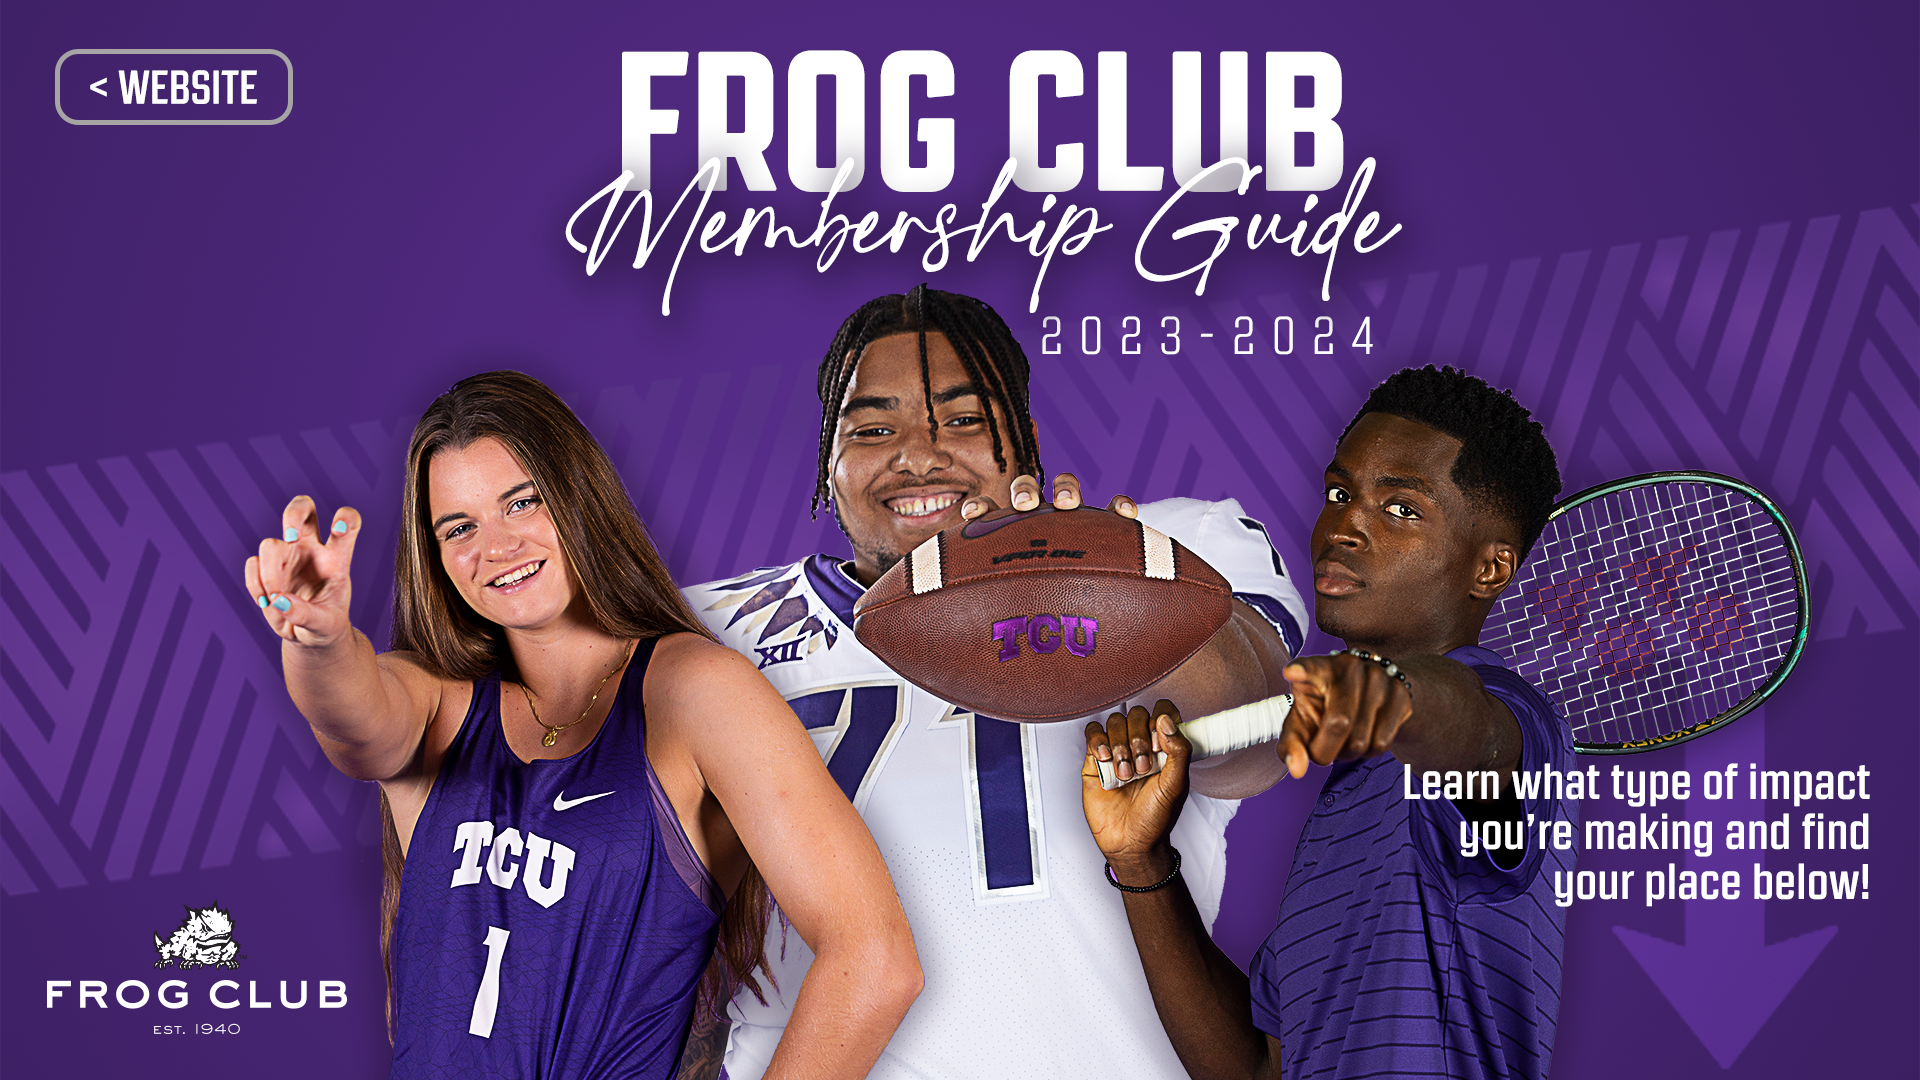 Frog Club Membership Guide 2023-2024